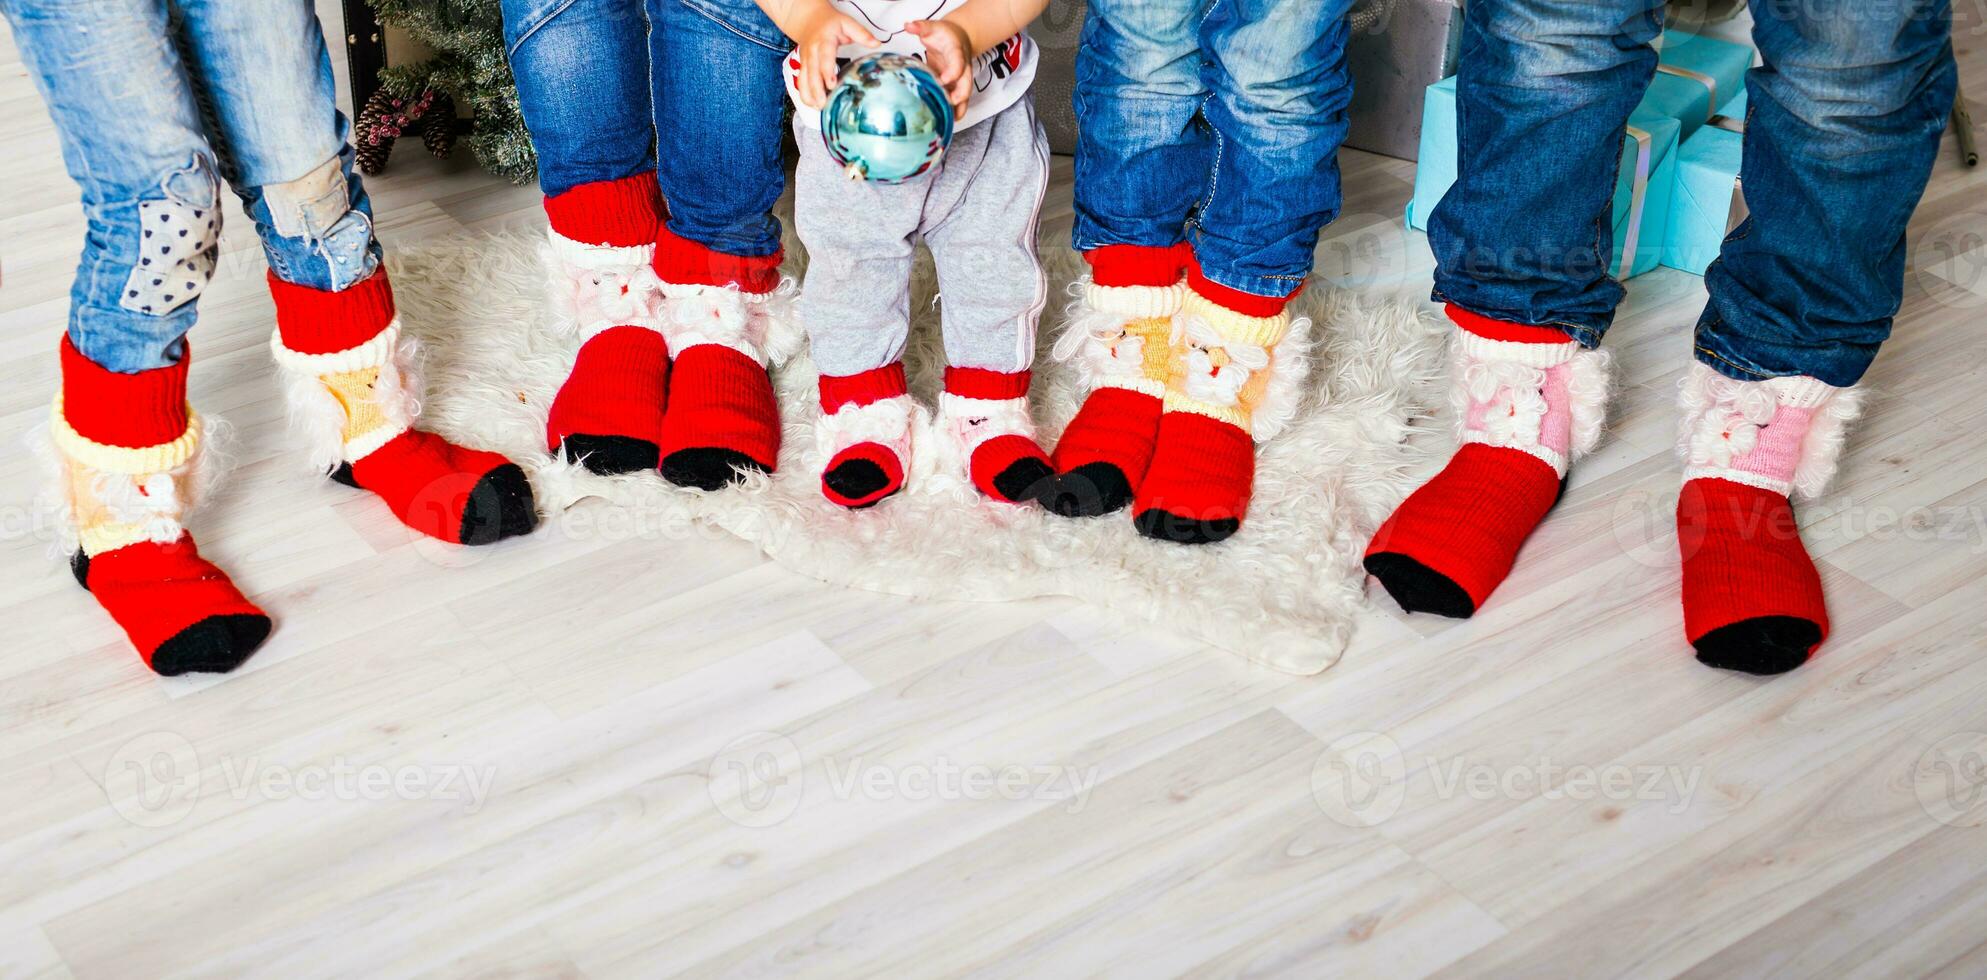 Lycklig familj med jul strumpor. vinter- Semester begrepp foto